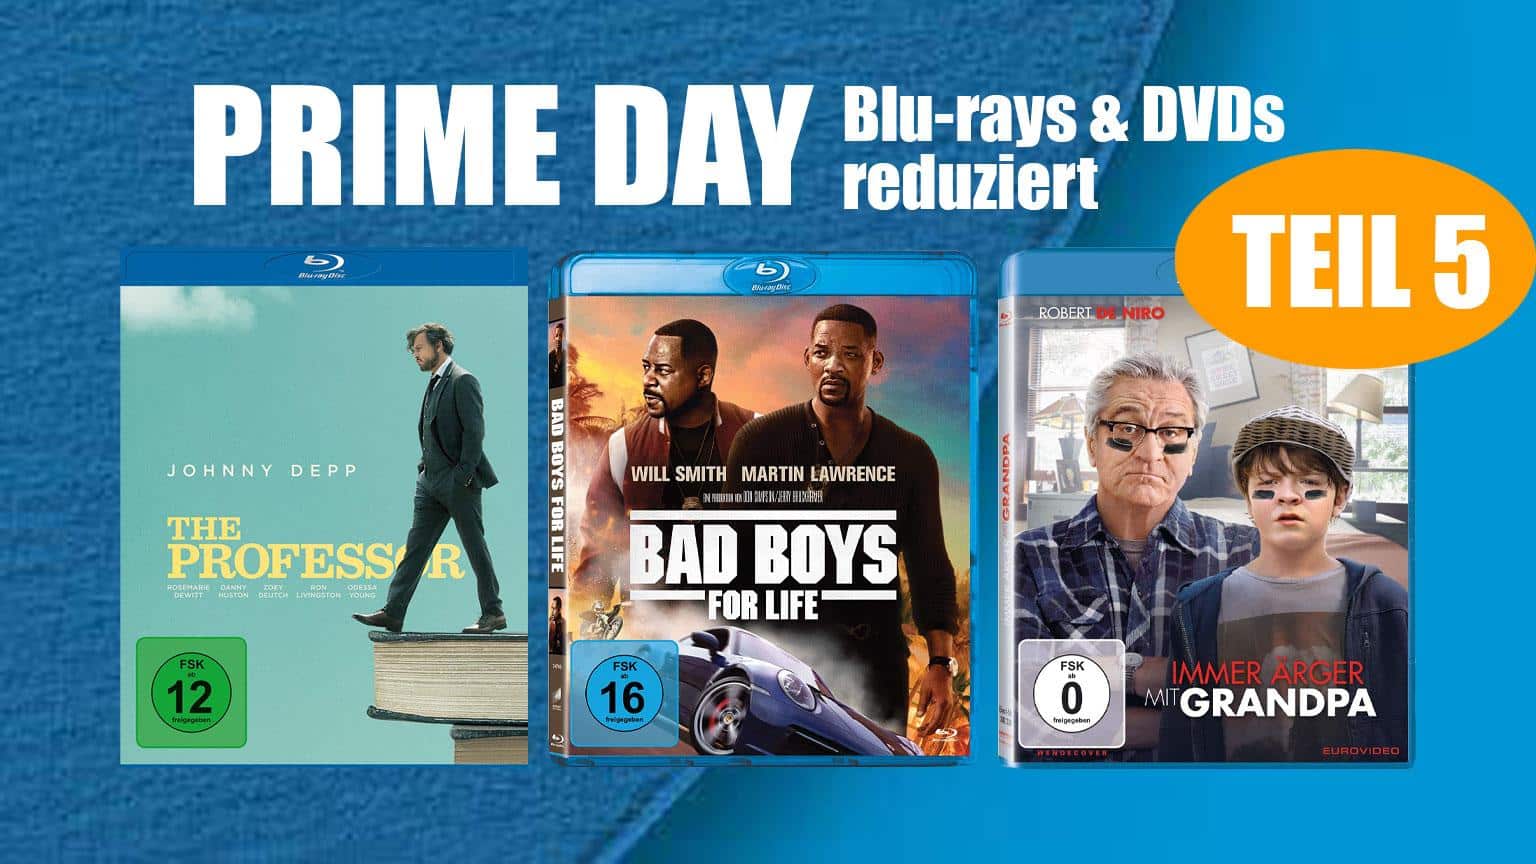 Prime Day 2020 Blu-ray & DVD reduziert Deal Amazon.de sparen kaufen shop Artikelbild Teil 5